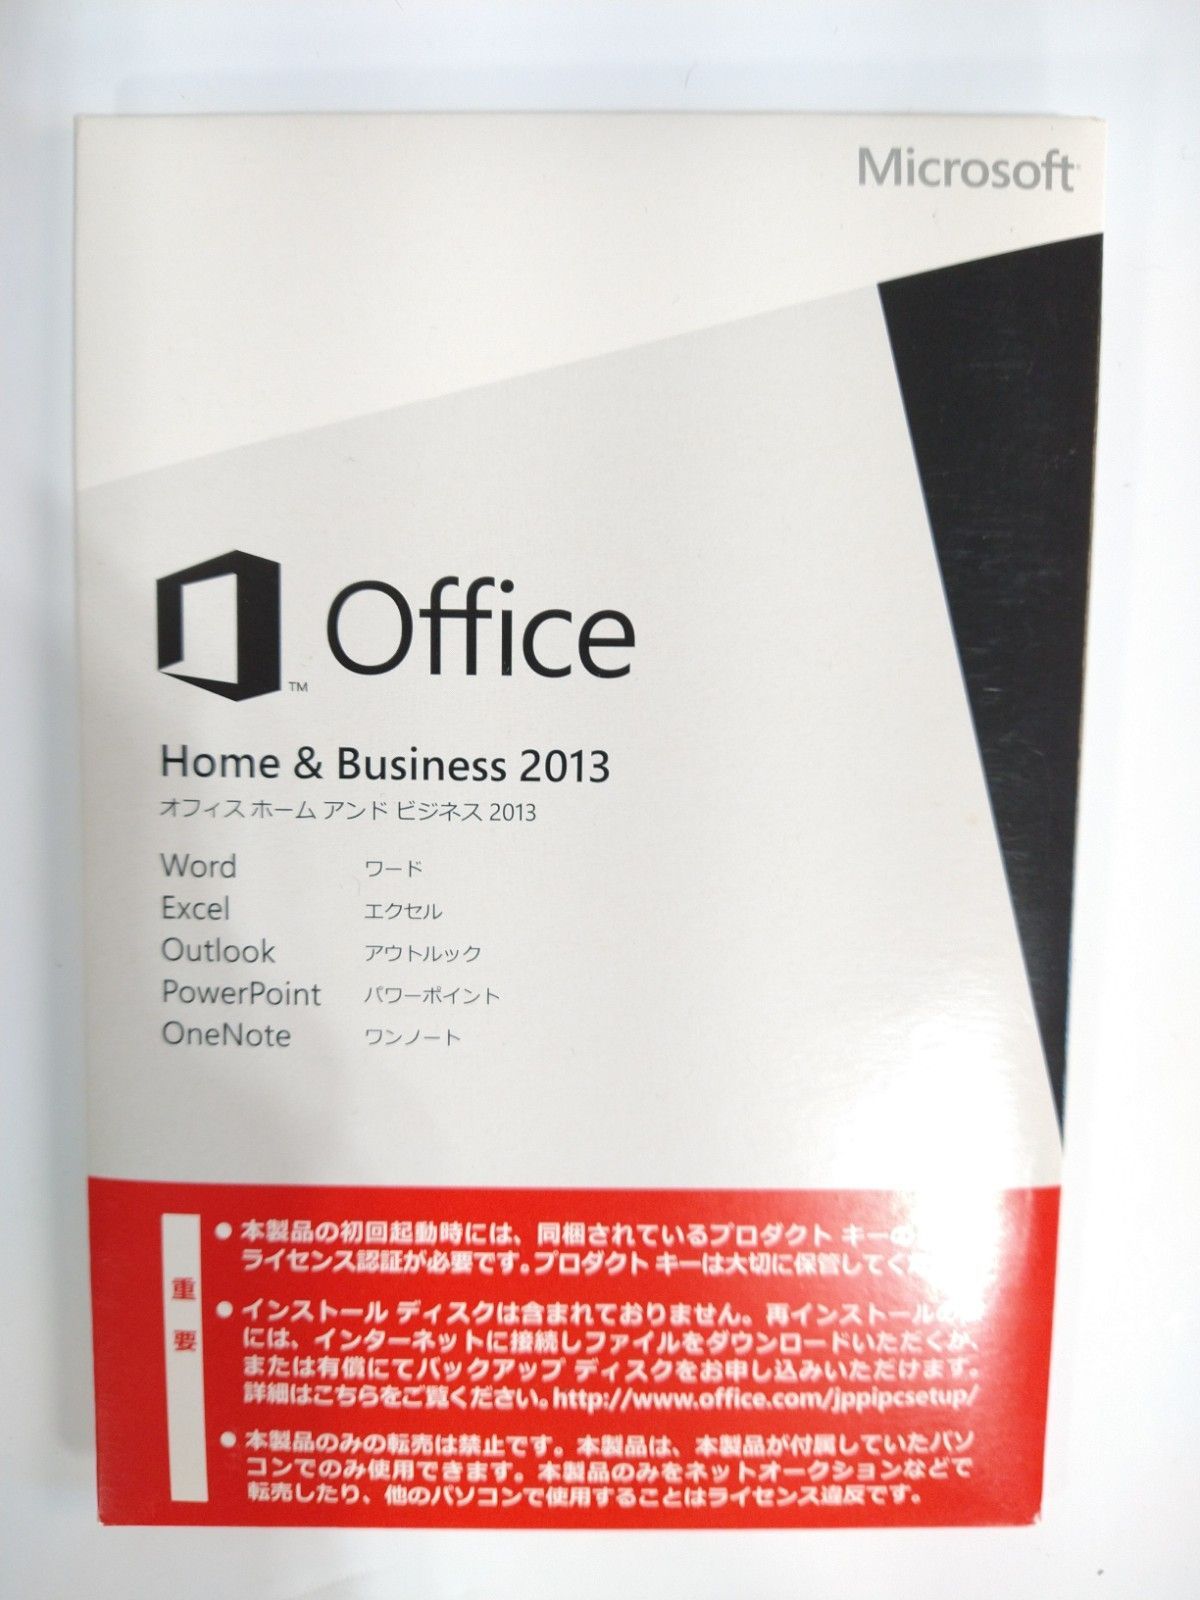 LIFEBOOK S904/J 最新Microsoft Office Pro搭載 ノートPC - 富士通